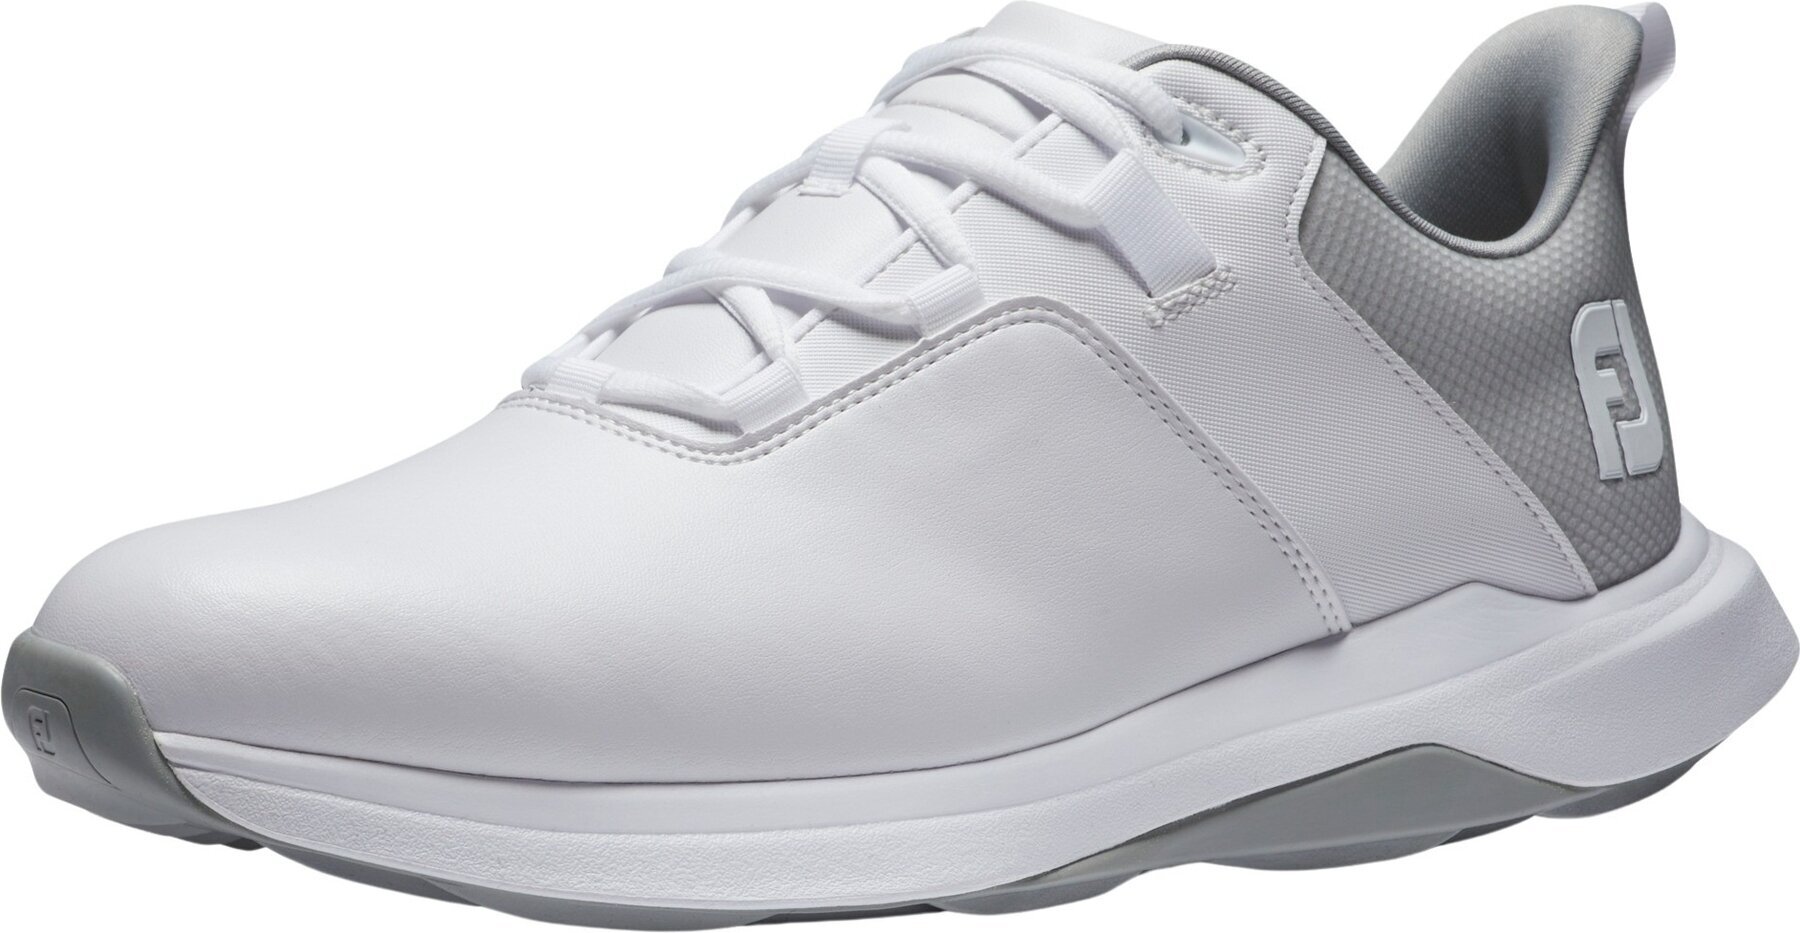 Footjoy ProLite Mens Golf Shoes White/Grey 47